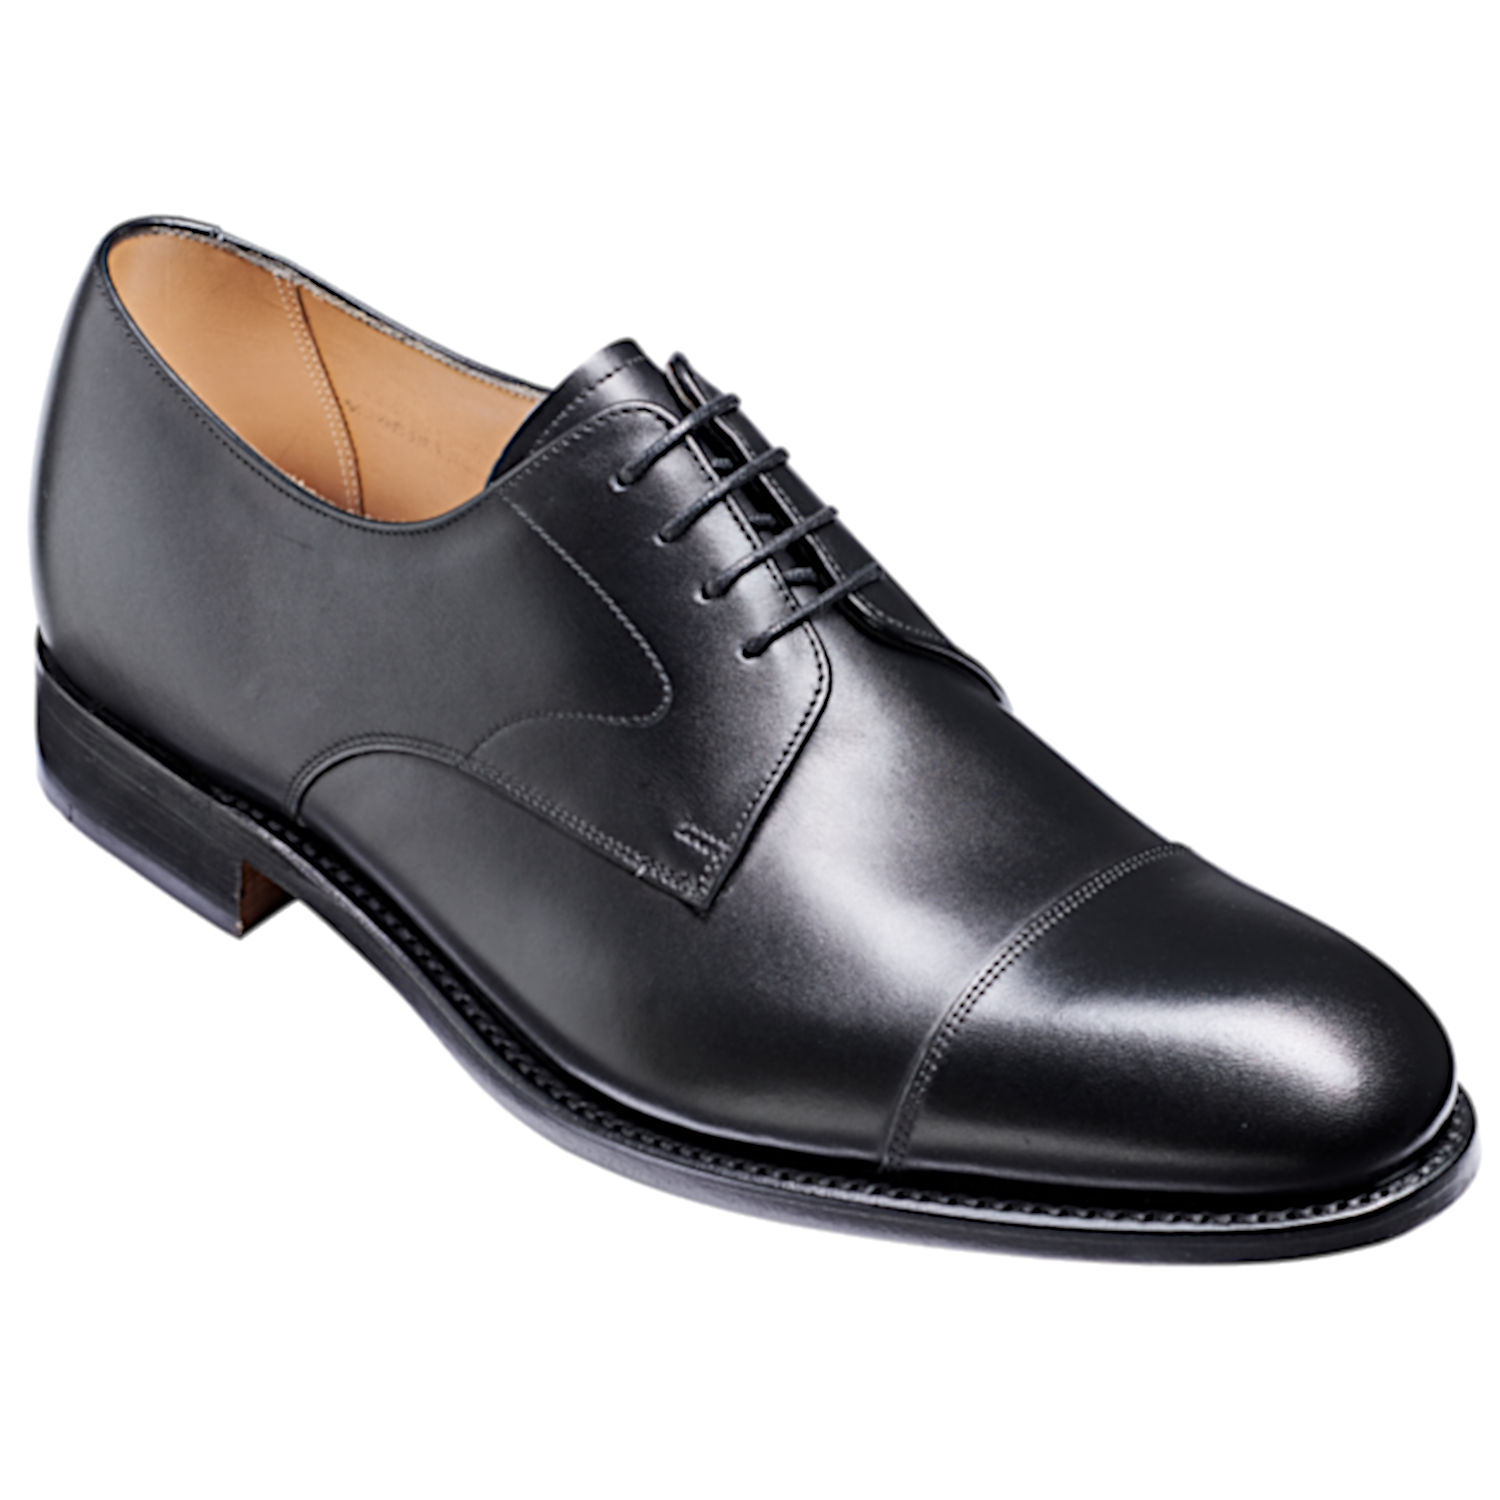 Barker Morden - Leather Sole - Pediwear Footwear